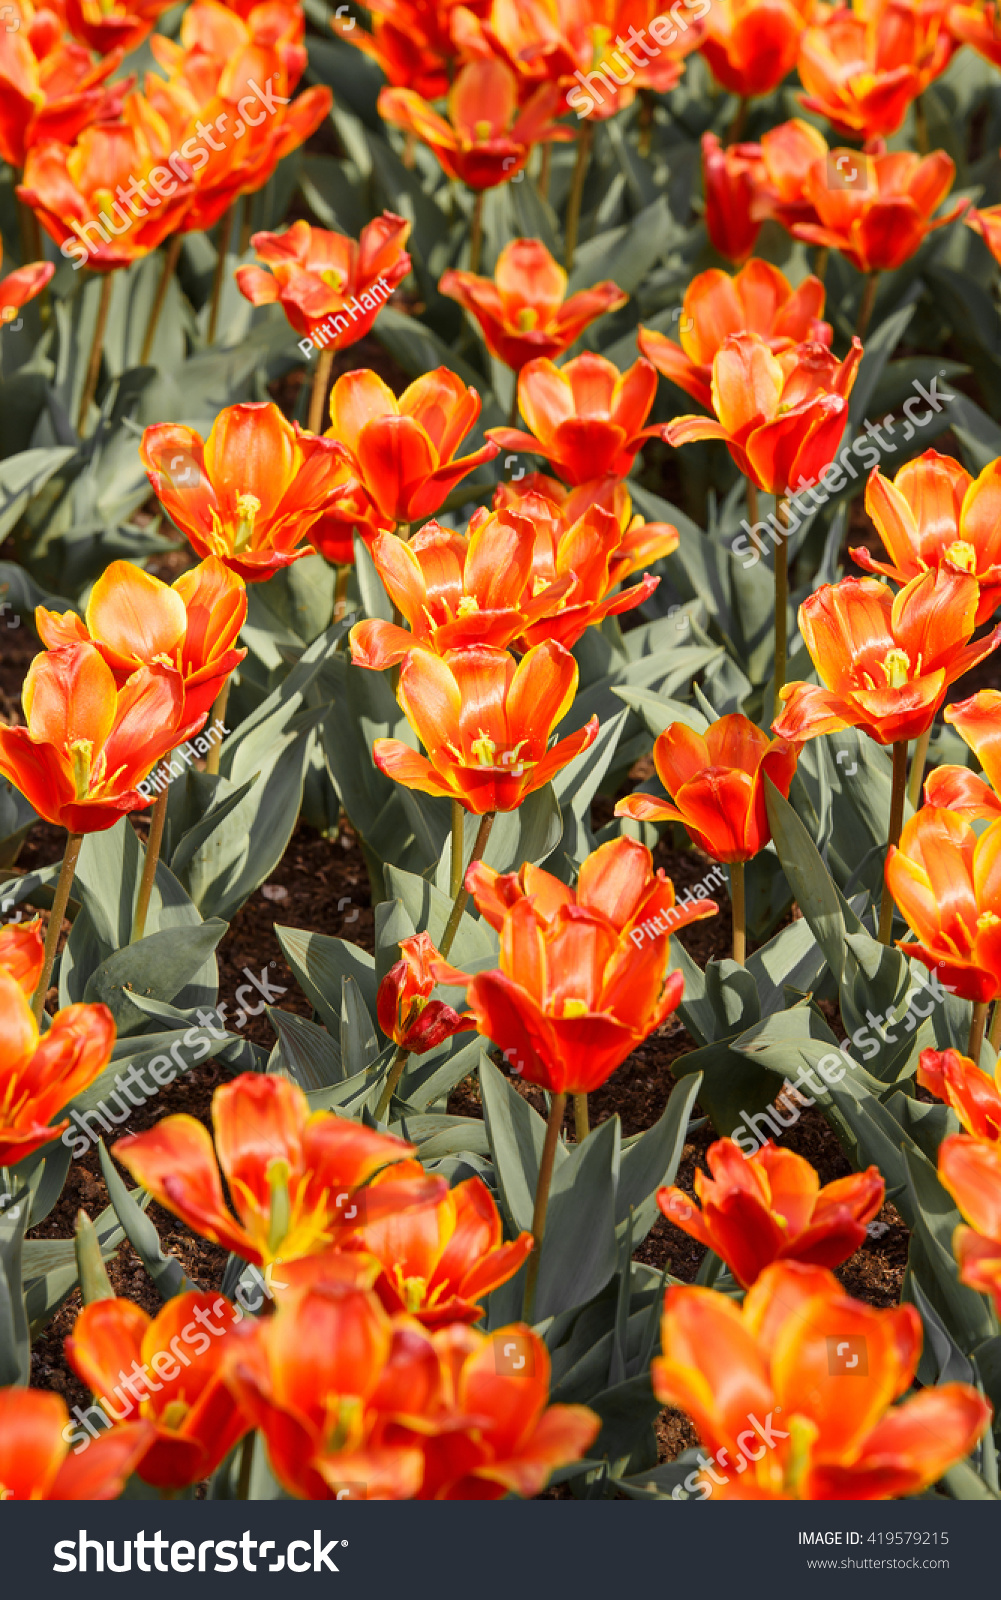 Nature background of orange tulips - Keukenhof, Netherlands #419579215